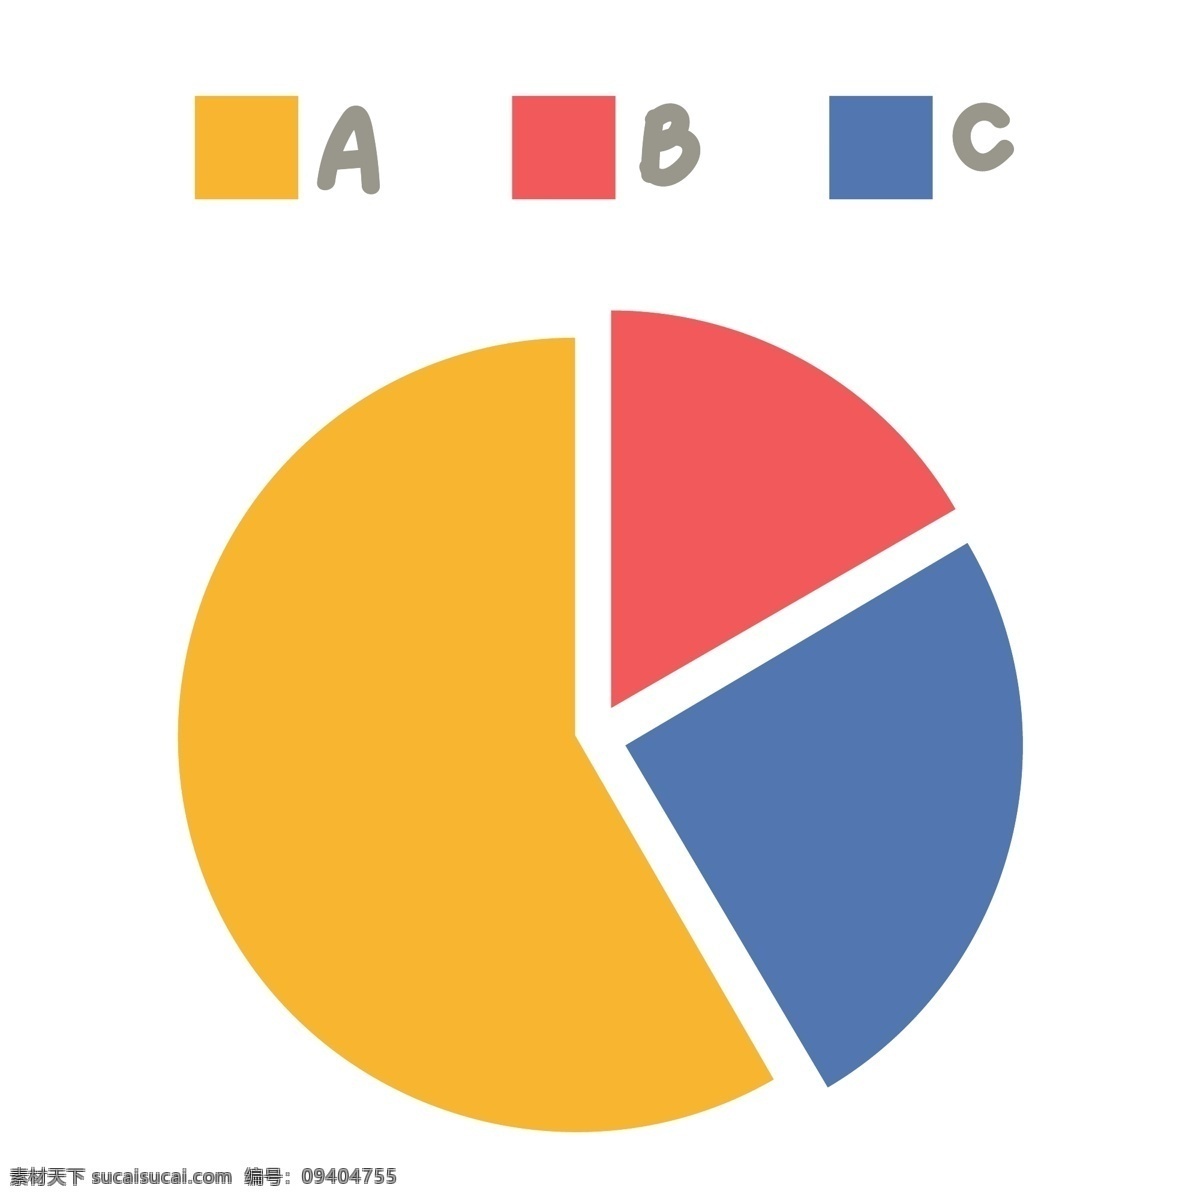 彩色 信息 饼 状 图 商务 图表 插画 图表信息 分类 信息分类 分类图表 商务信息图表